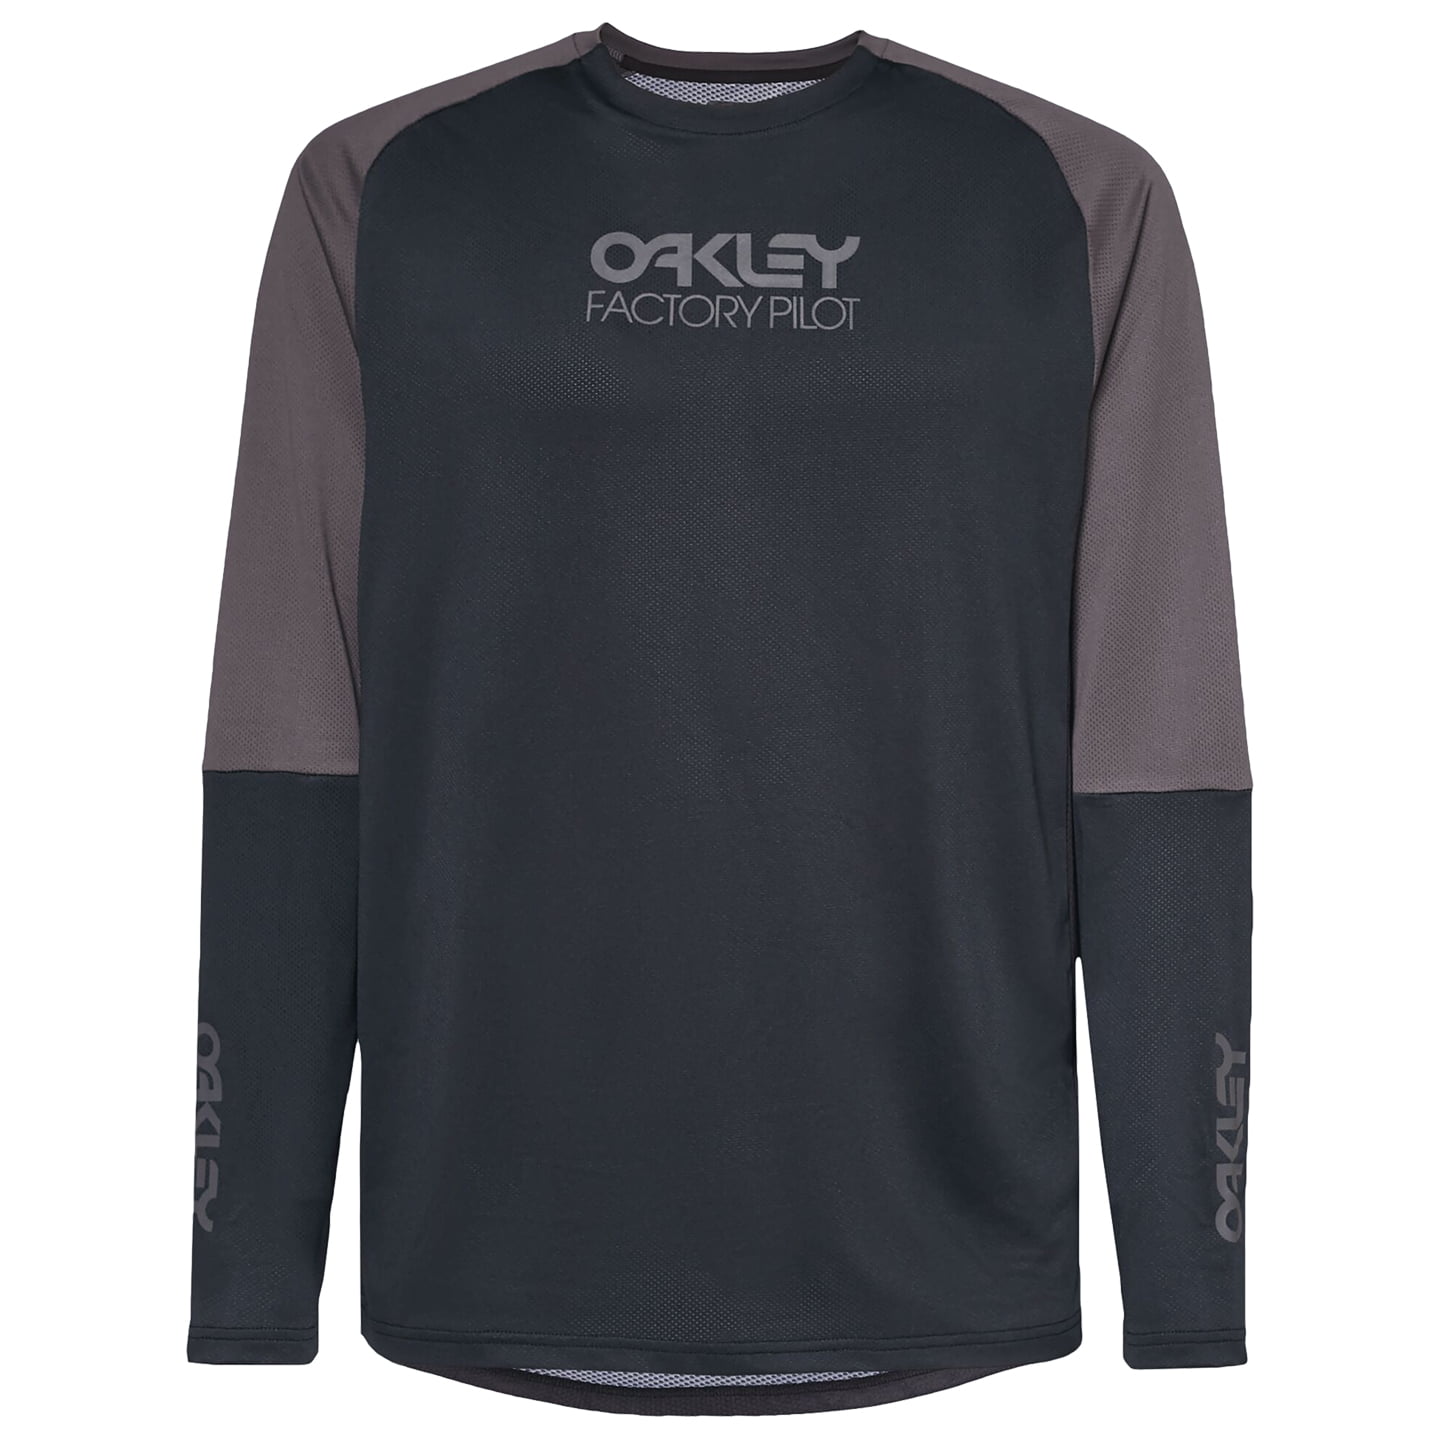 OAKLEY Factory Pilot Long Sleeve Bike Shirt Bikeshirt, for men, size L